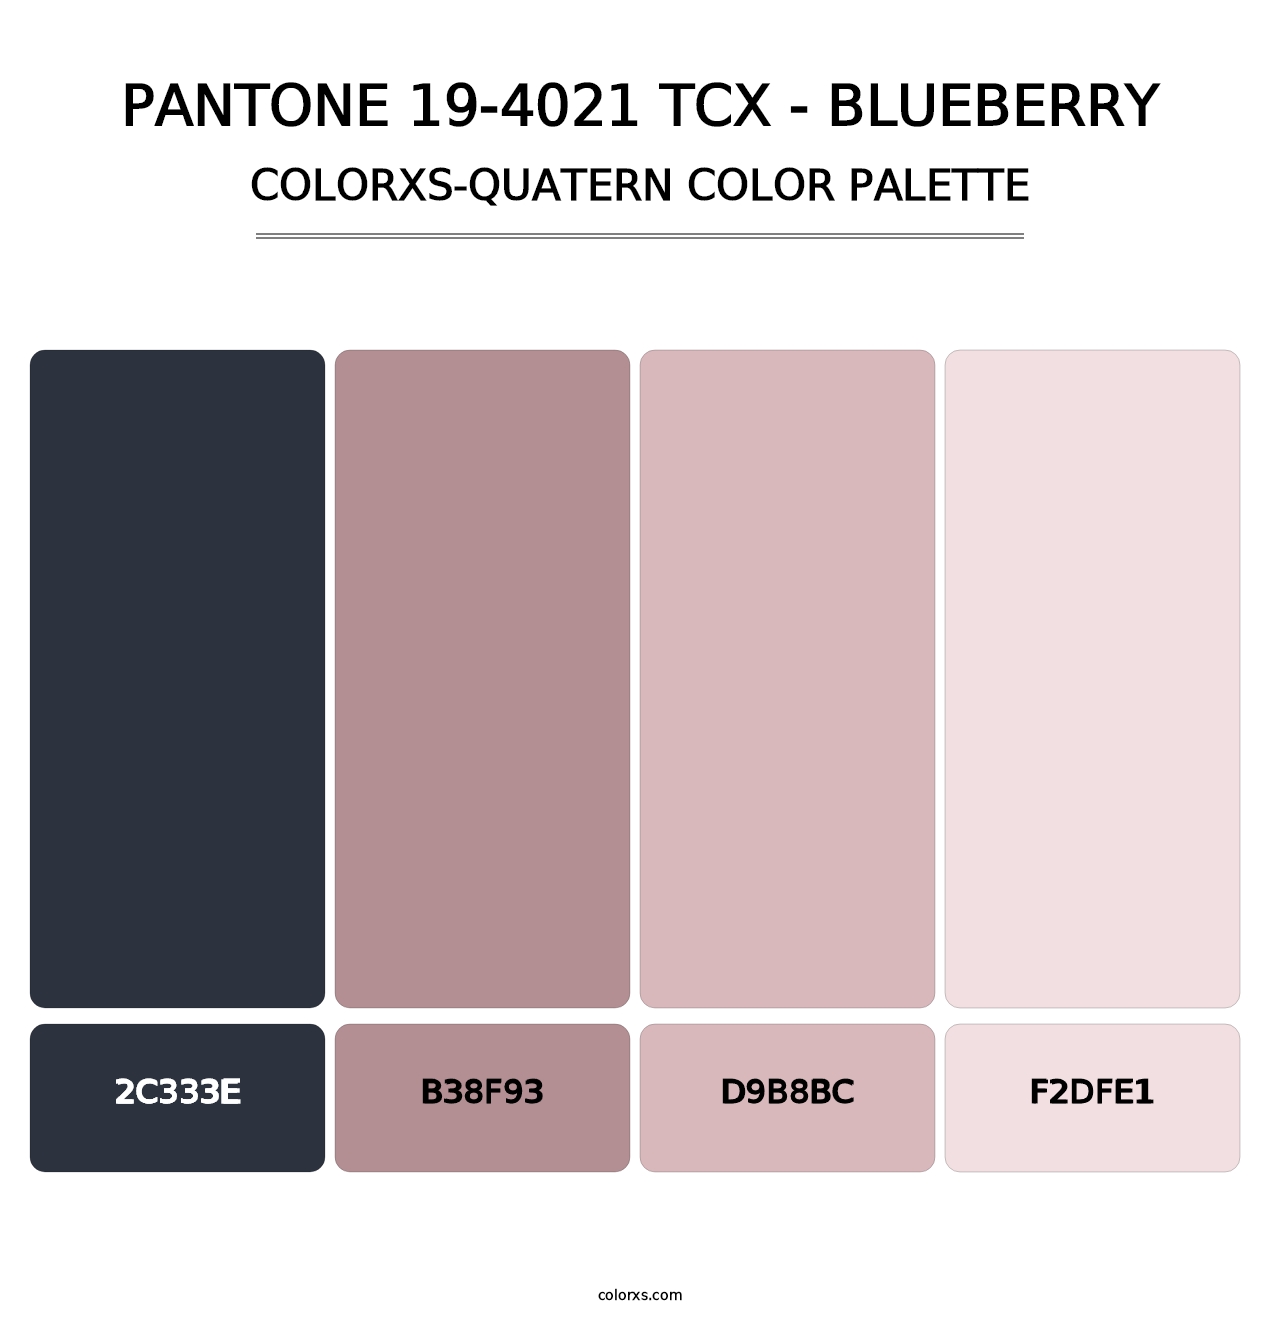 PANTONE 19-4021 TCX - Blueberry - Colorxs Quatern Palette